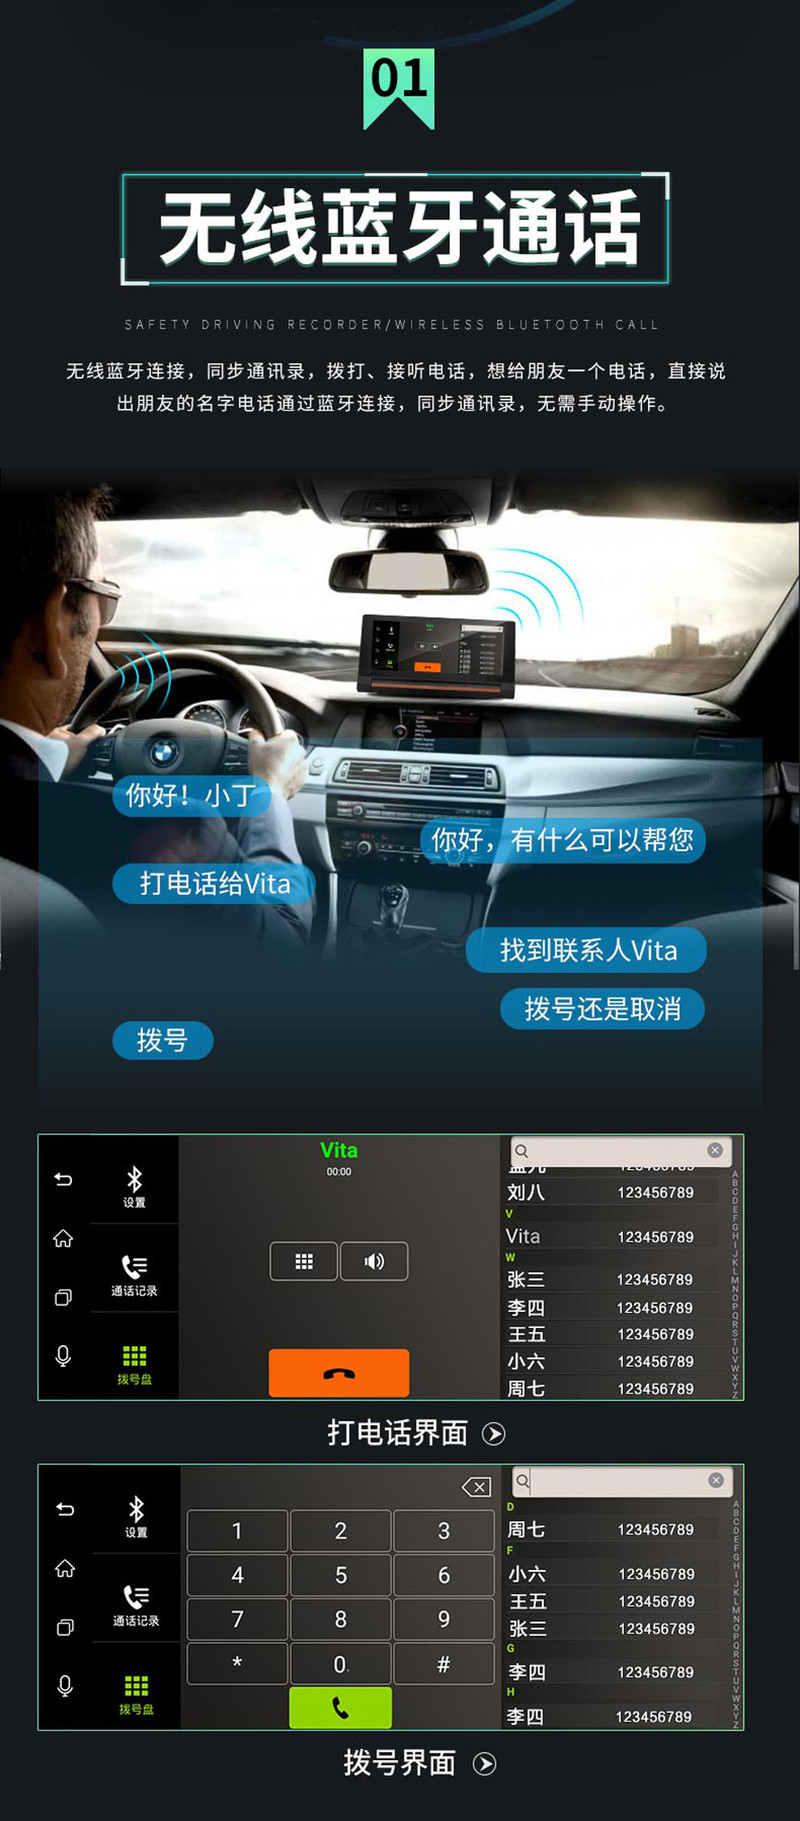 丁威特 4G中控台智能声控行车记录仪电子狗导航仪一体机1080p高清双镜头倒车影像语音导航